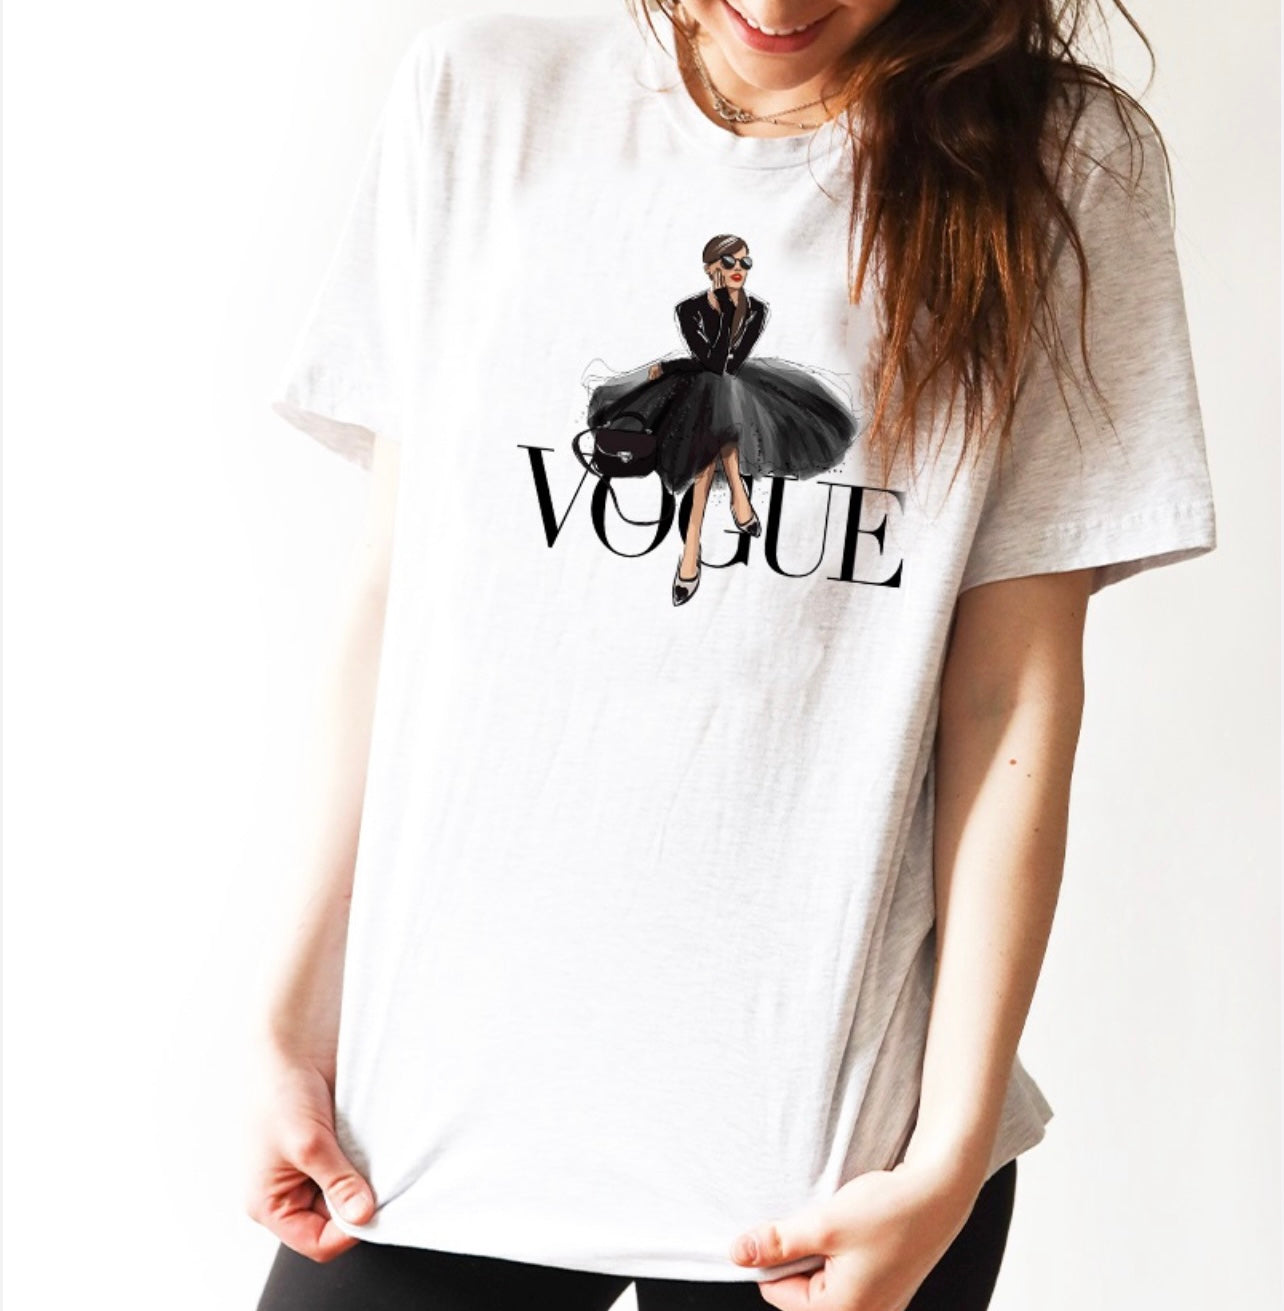 Style like Vogue T-shirt